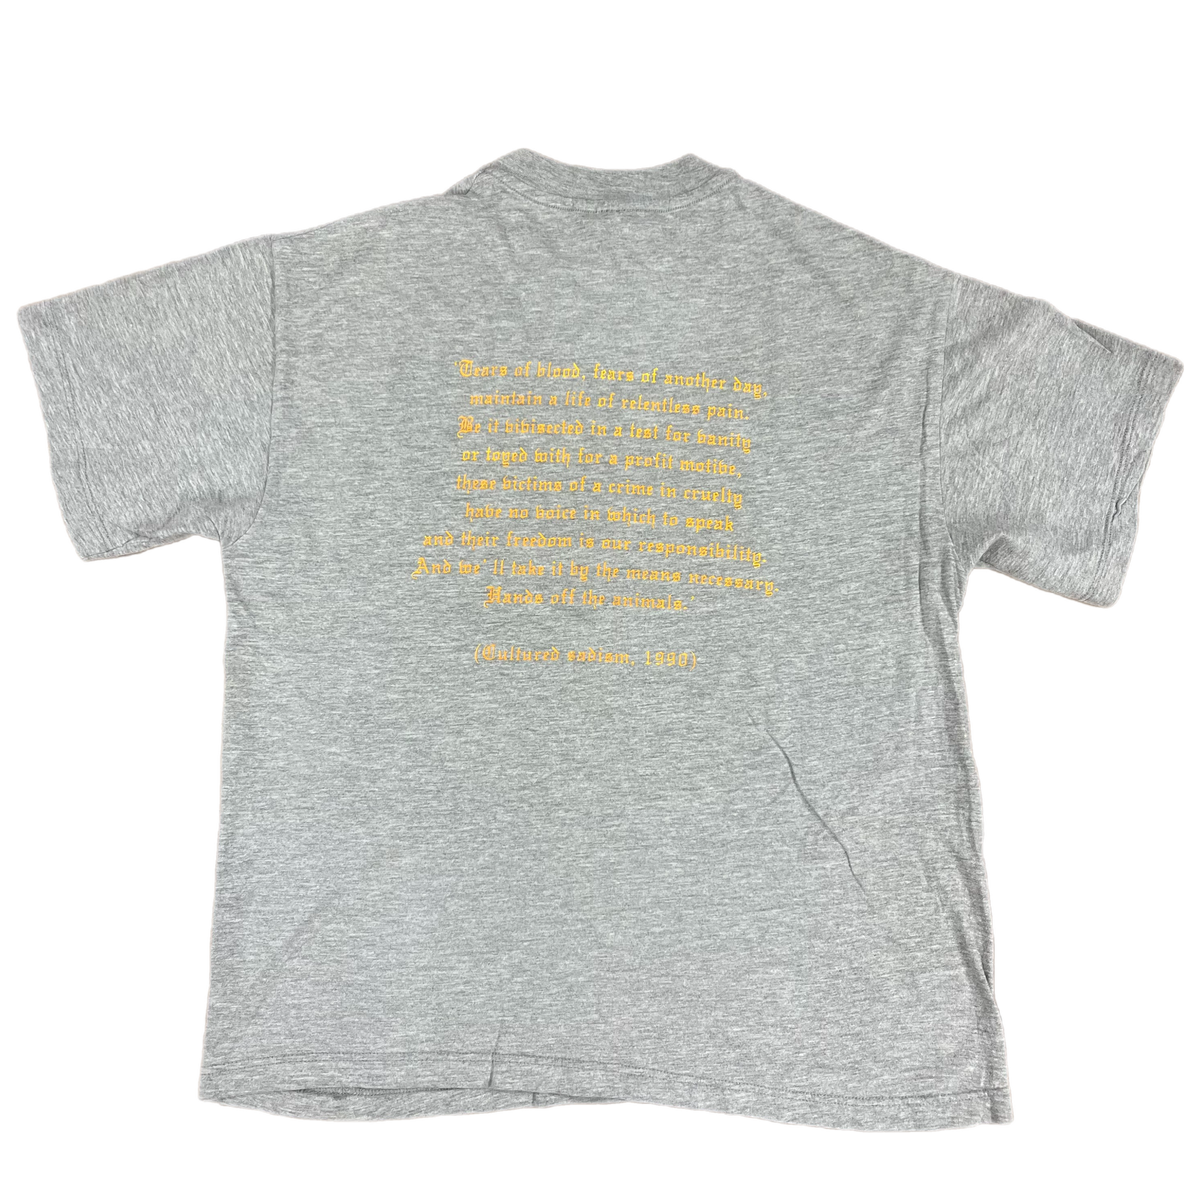 Vintage Raid &quot;Above The Law&quot; Hardline Records T-Shirt